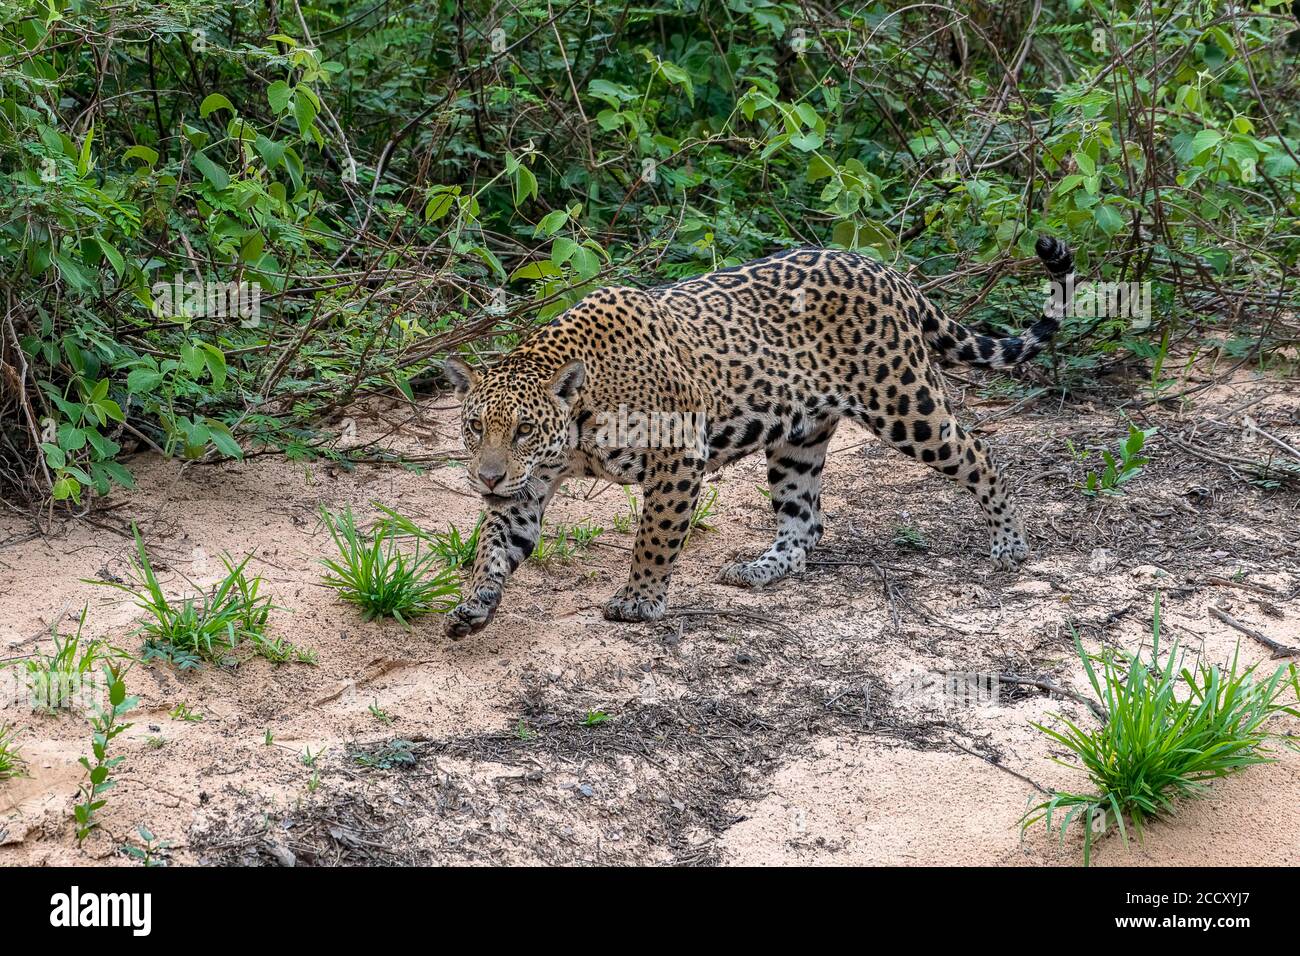 Jaguar (Panthera ONCA), femme, glisse sur des semelles silencieuses, Matto Grosso do Sul, Pantanal, Brésil Banque D'Images